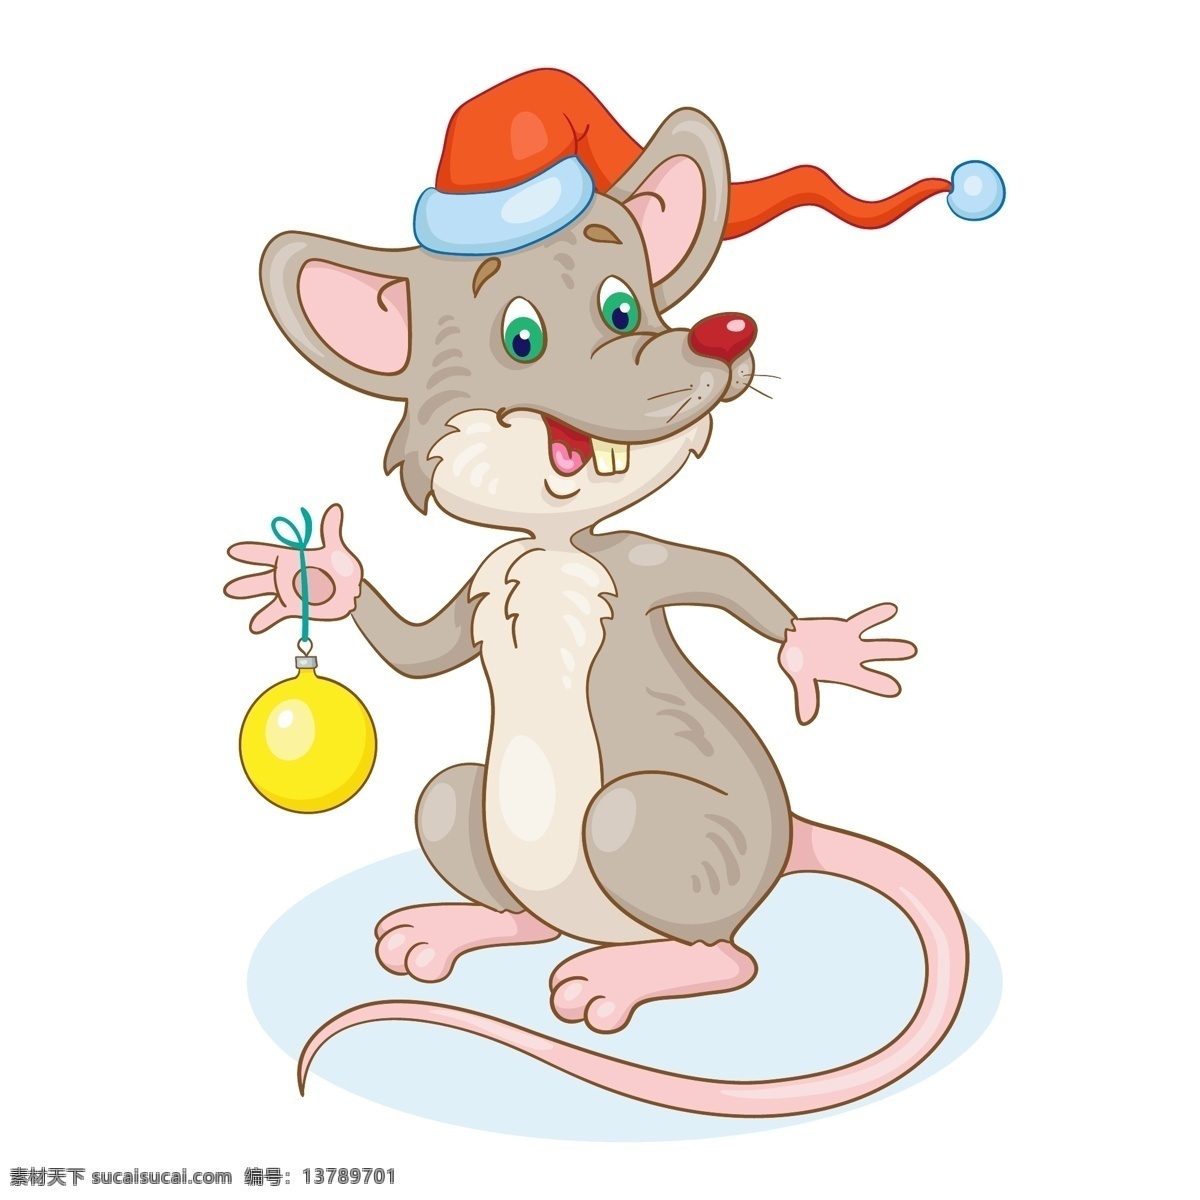 矢量老鼠 卡通老鼠 手绘老鼠 老鼠插画 可爱老鼠 鼠年 圣诞节老鼠 圣诞节 圣诞节动物 生物世界 野生动物